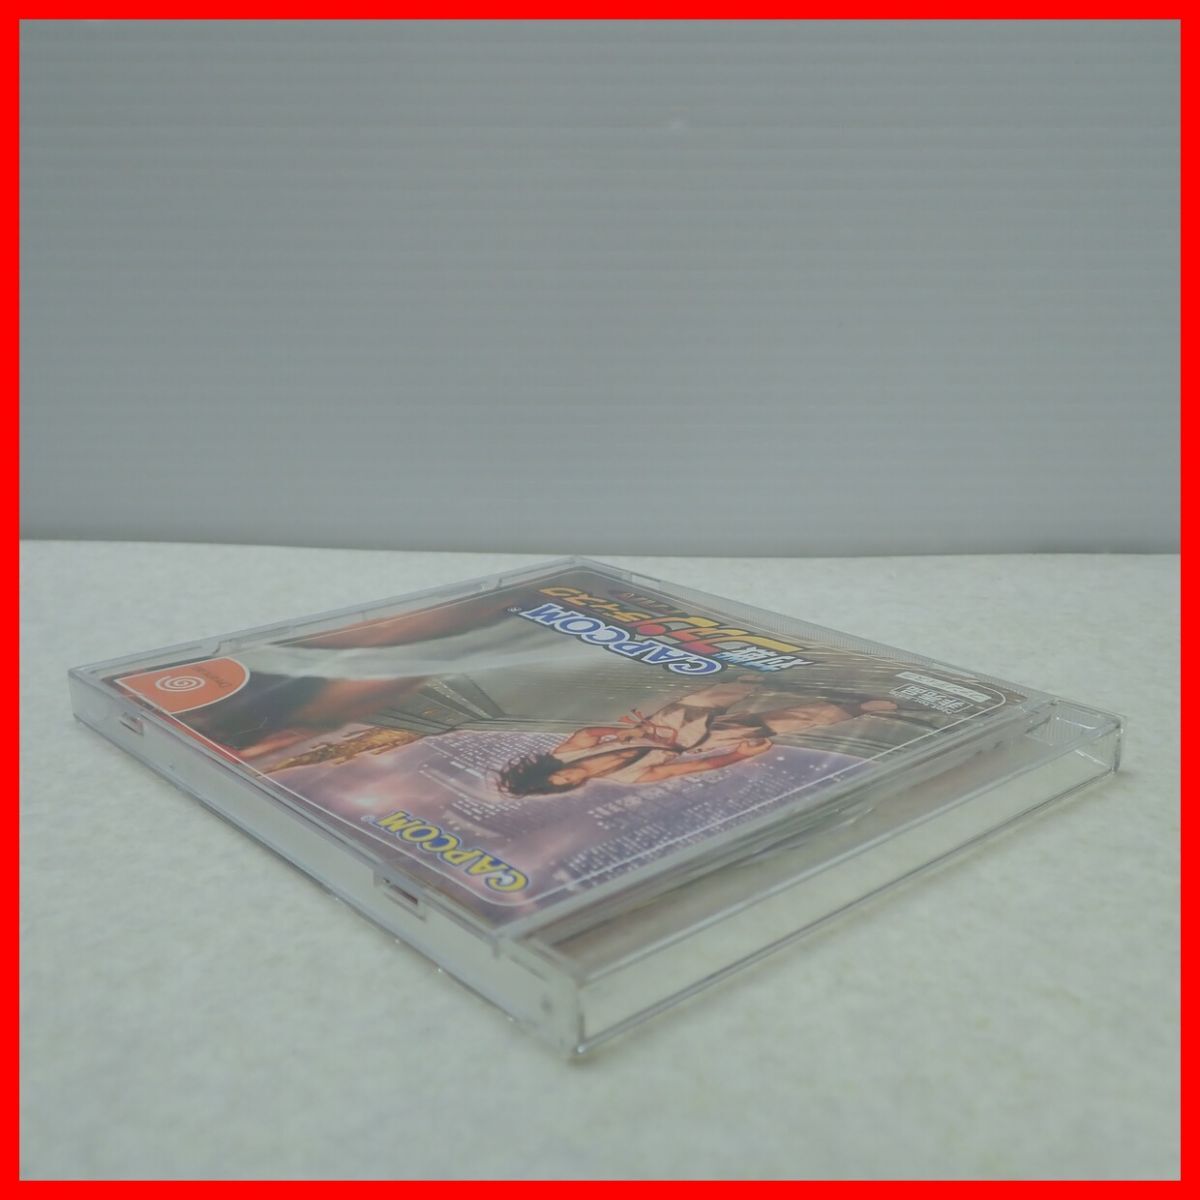 * operation guarantee goods not for sale DC Dreamcast CAPCOM Capcom against war fan disk CAPCOM Capcom box opinion attaching [PP